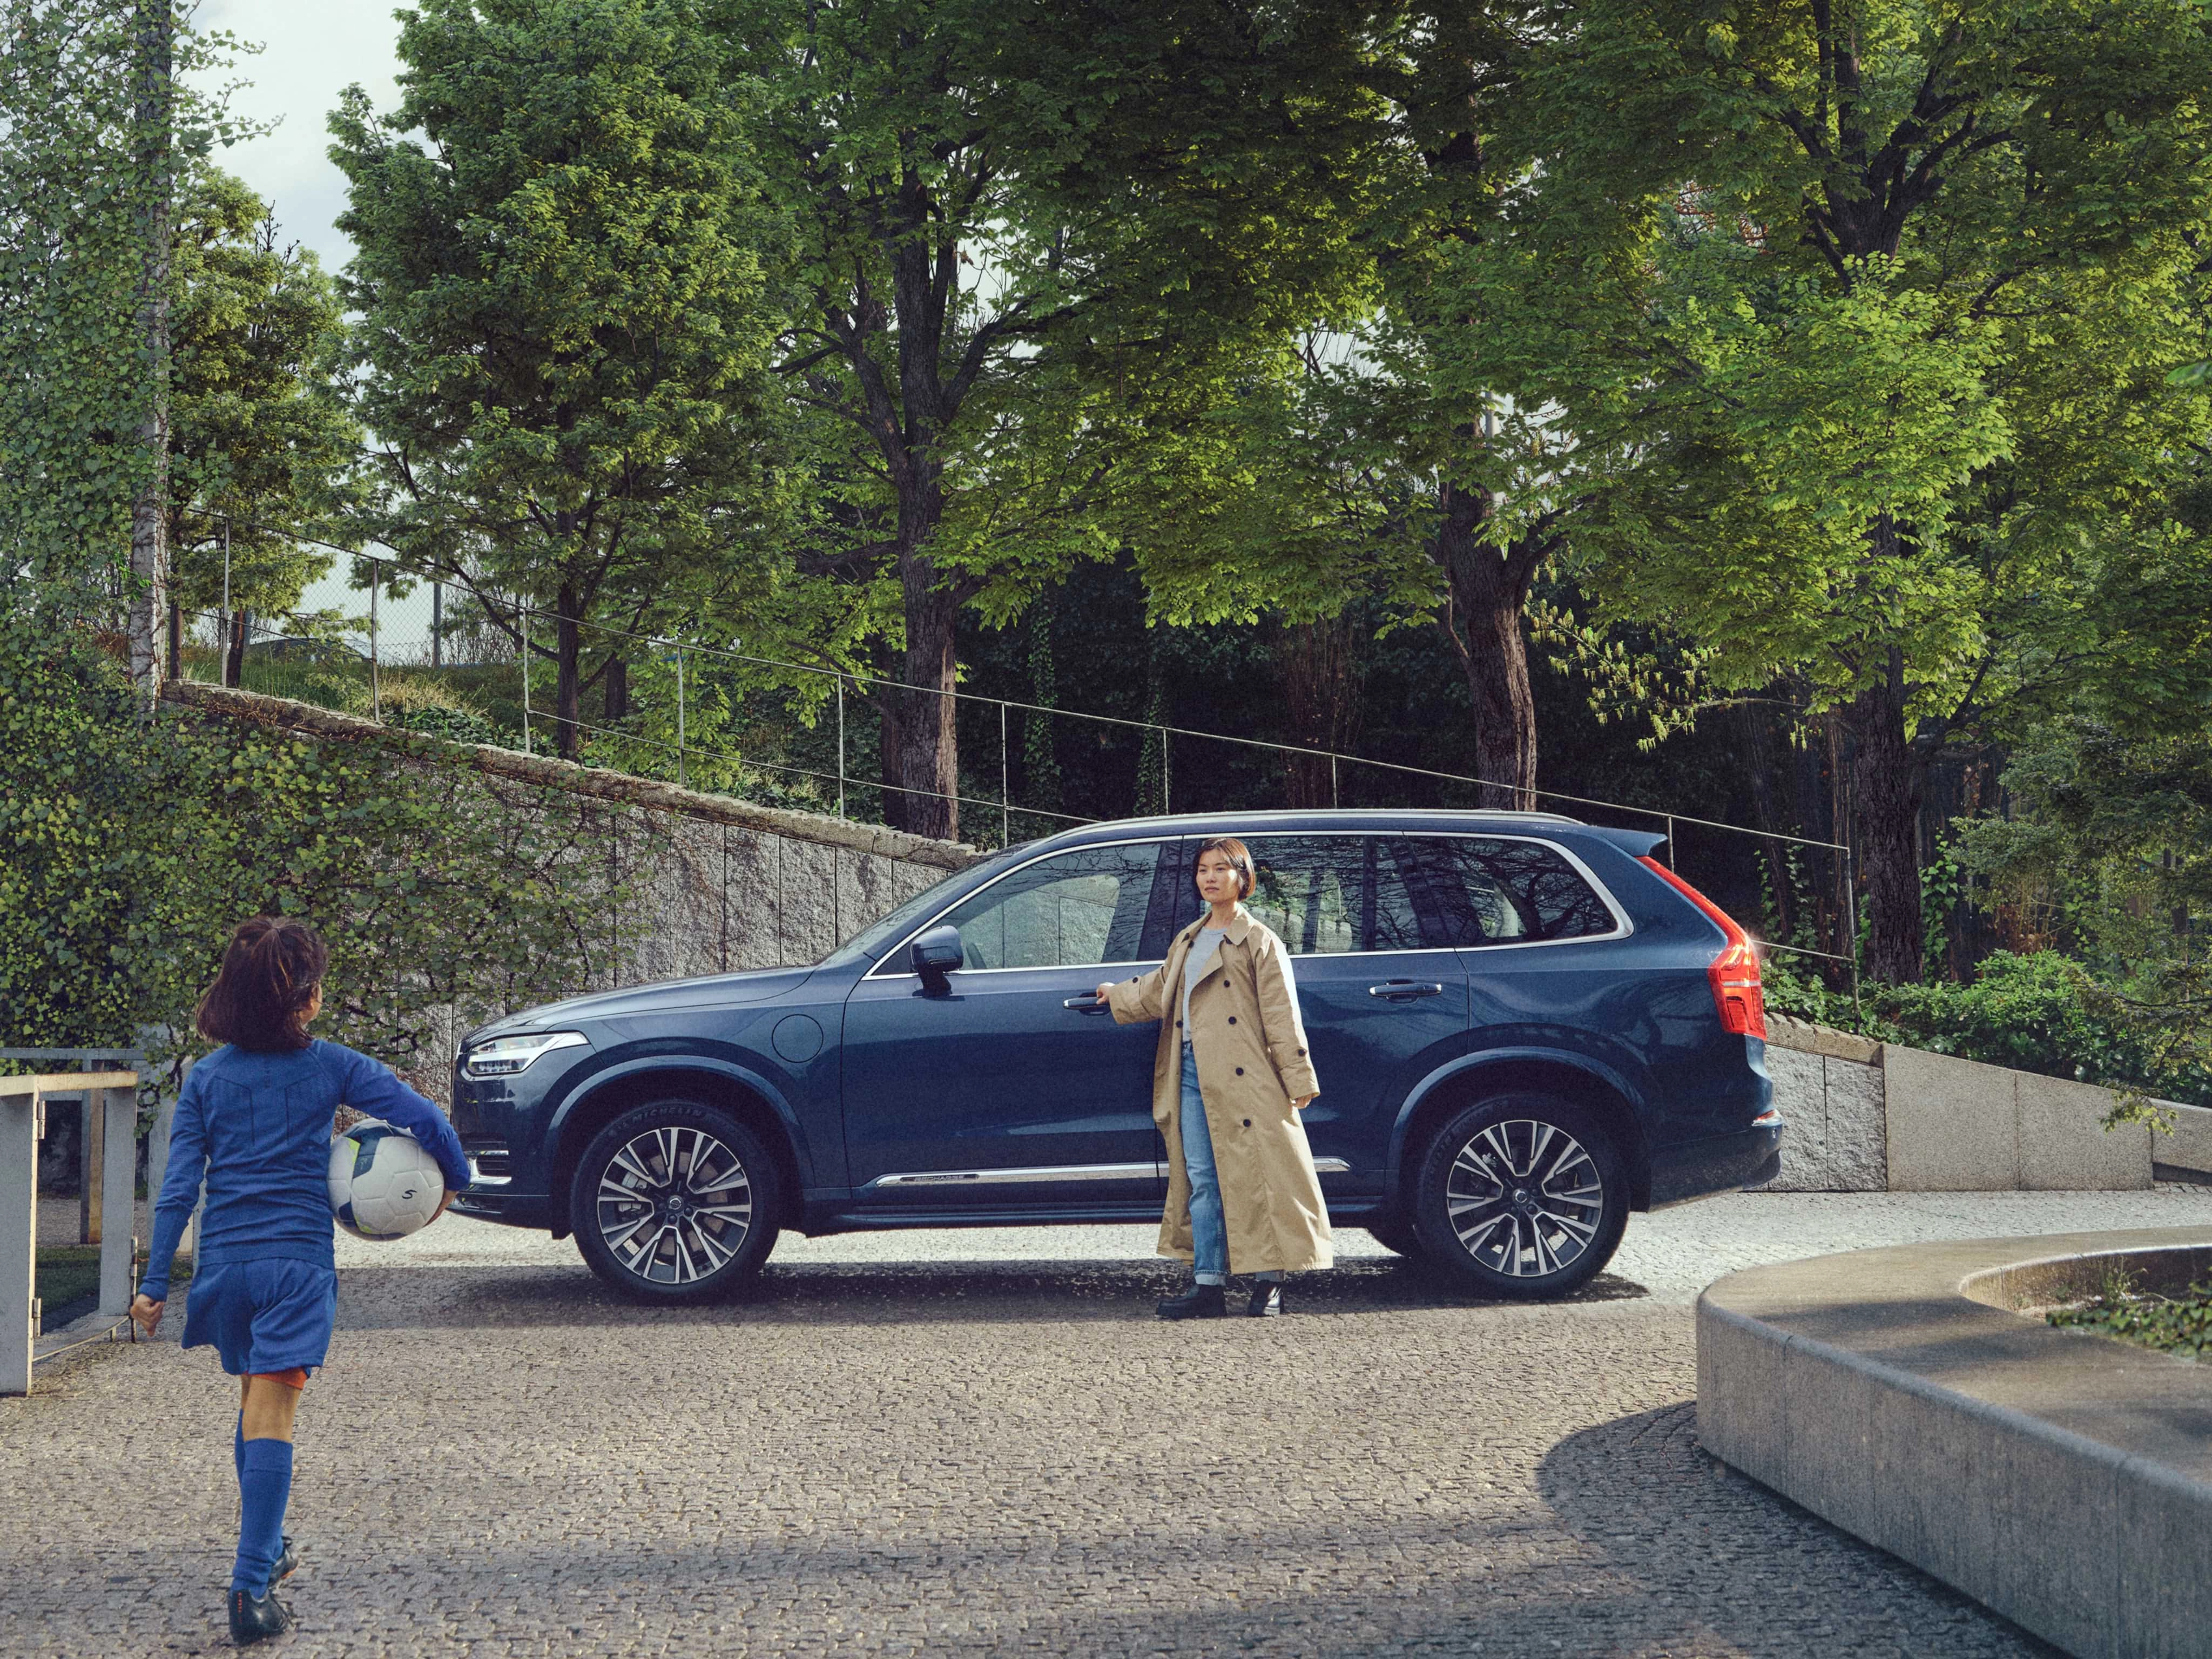 คุณแม่คนหนึ่งยืนอยู่ใกล้รถ Volvo XC90 รุ่น Denim Blue ขณะที่ลูกสาวของเธอเดินเข้ามาในชุดสำหรับฝึกซ้อมฟุตบอลและถือลูกบอลอยู่ในมือ